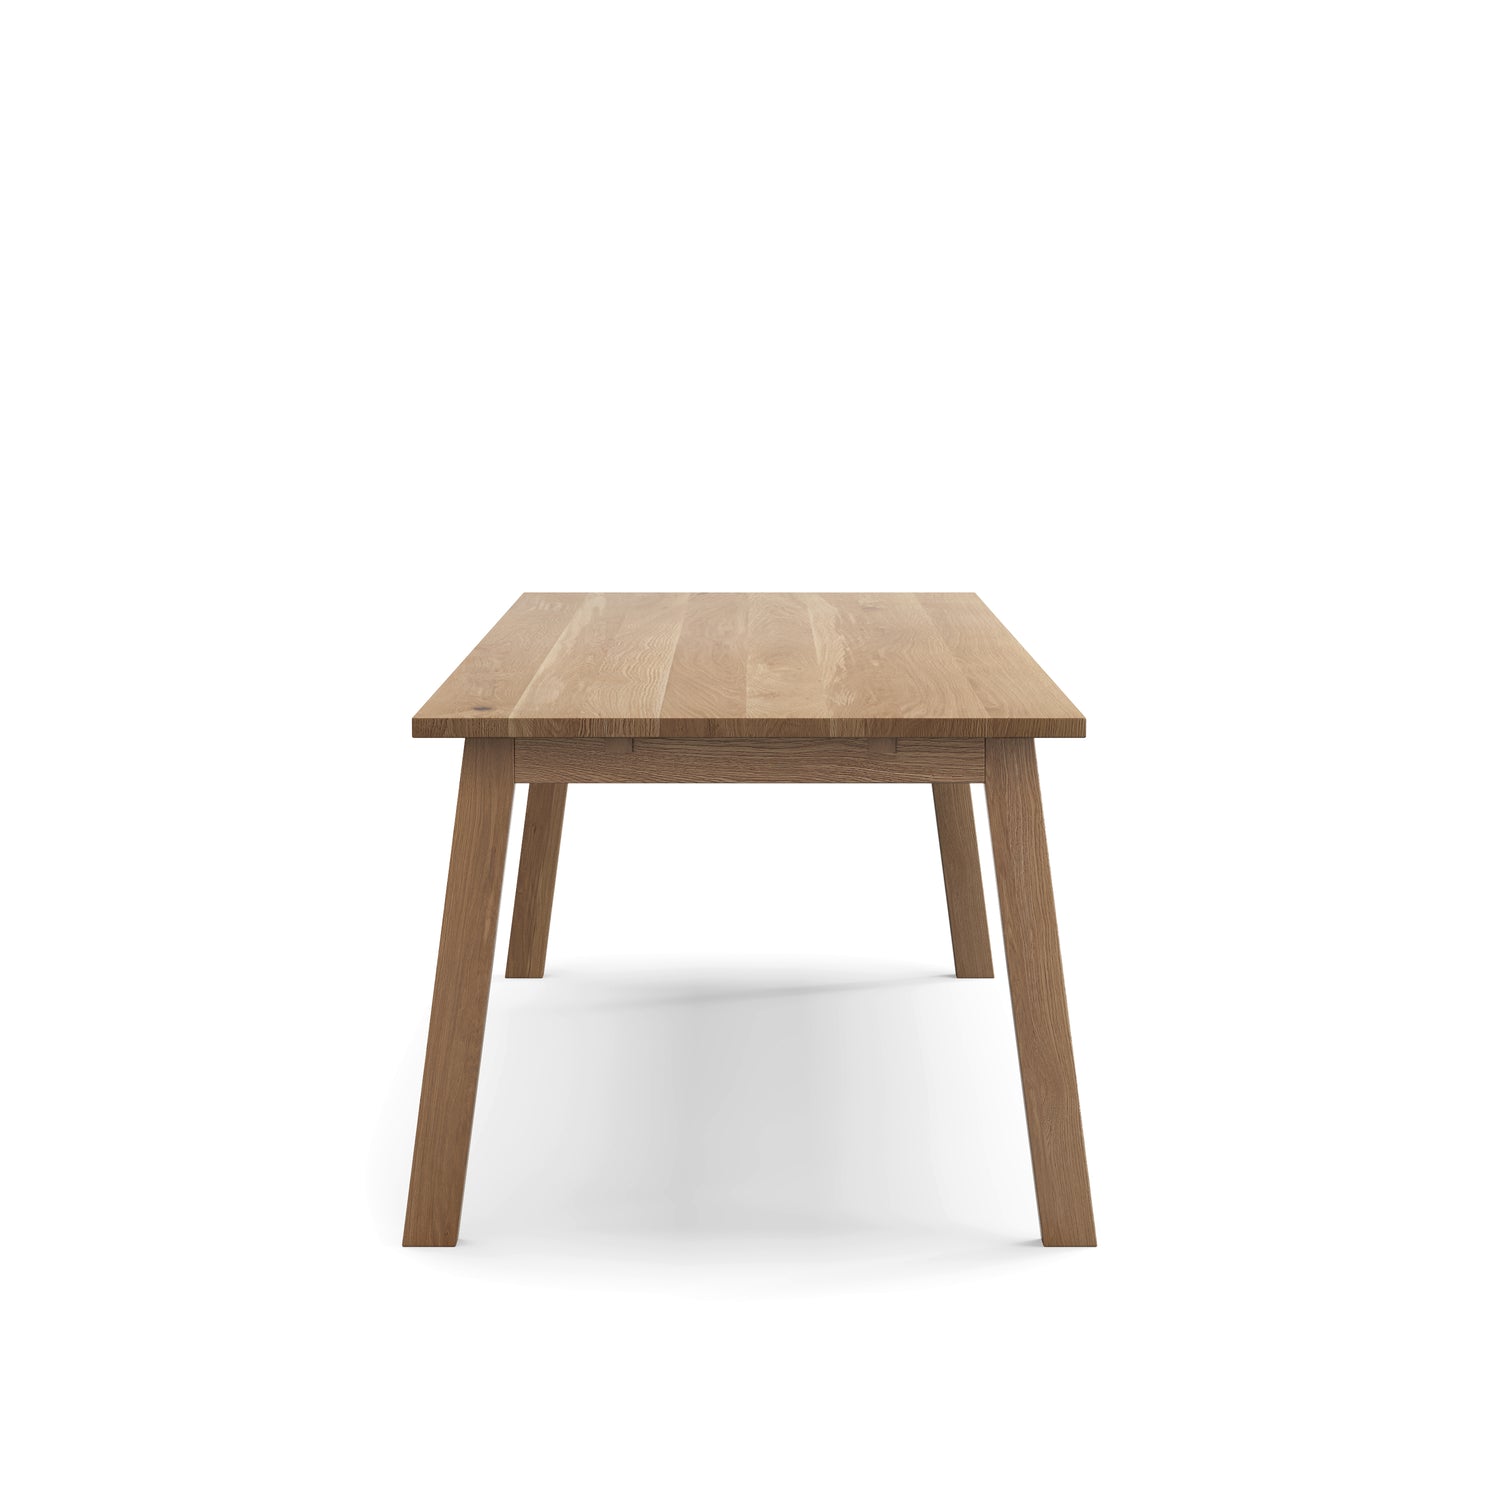 Luft oak table - 96 x 36 in. - 3504